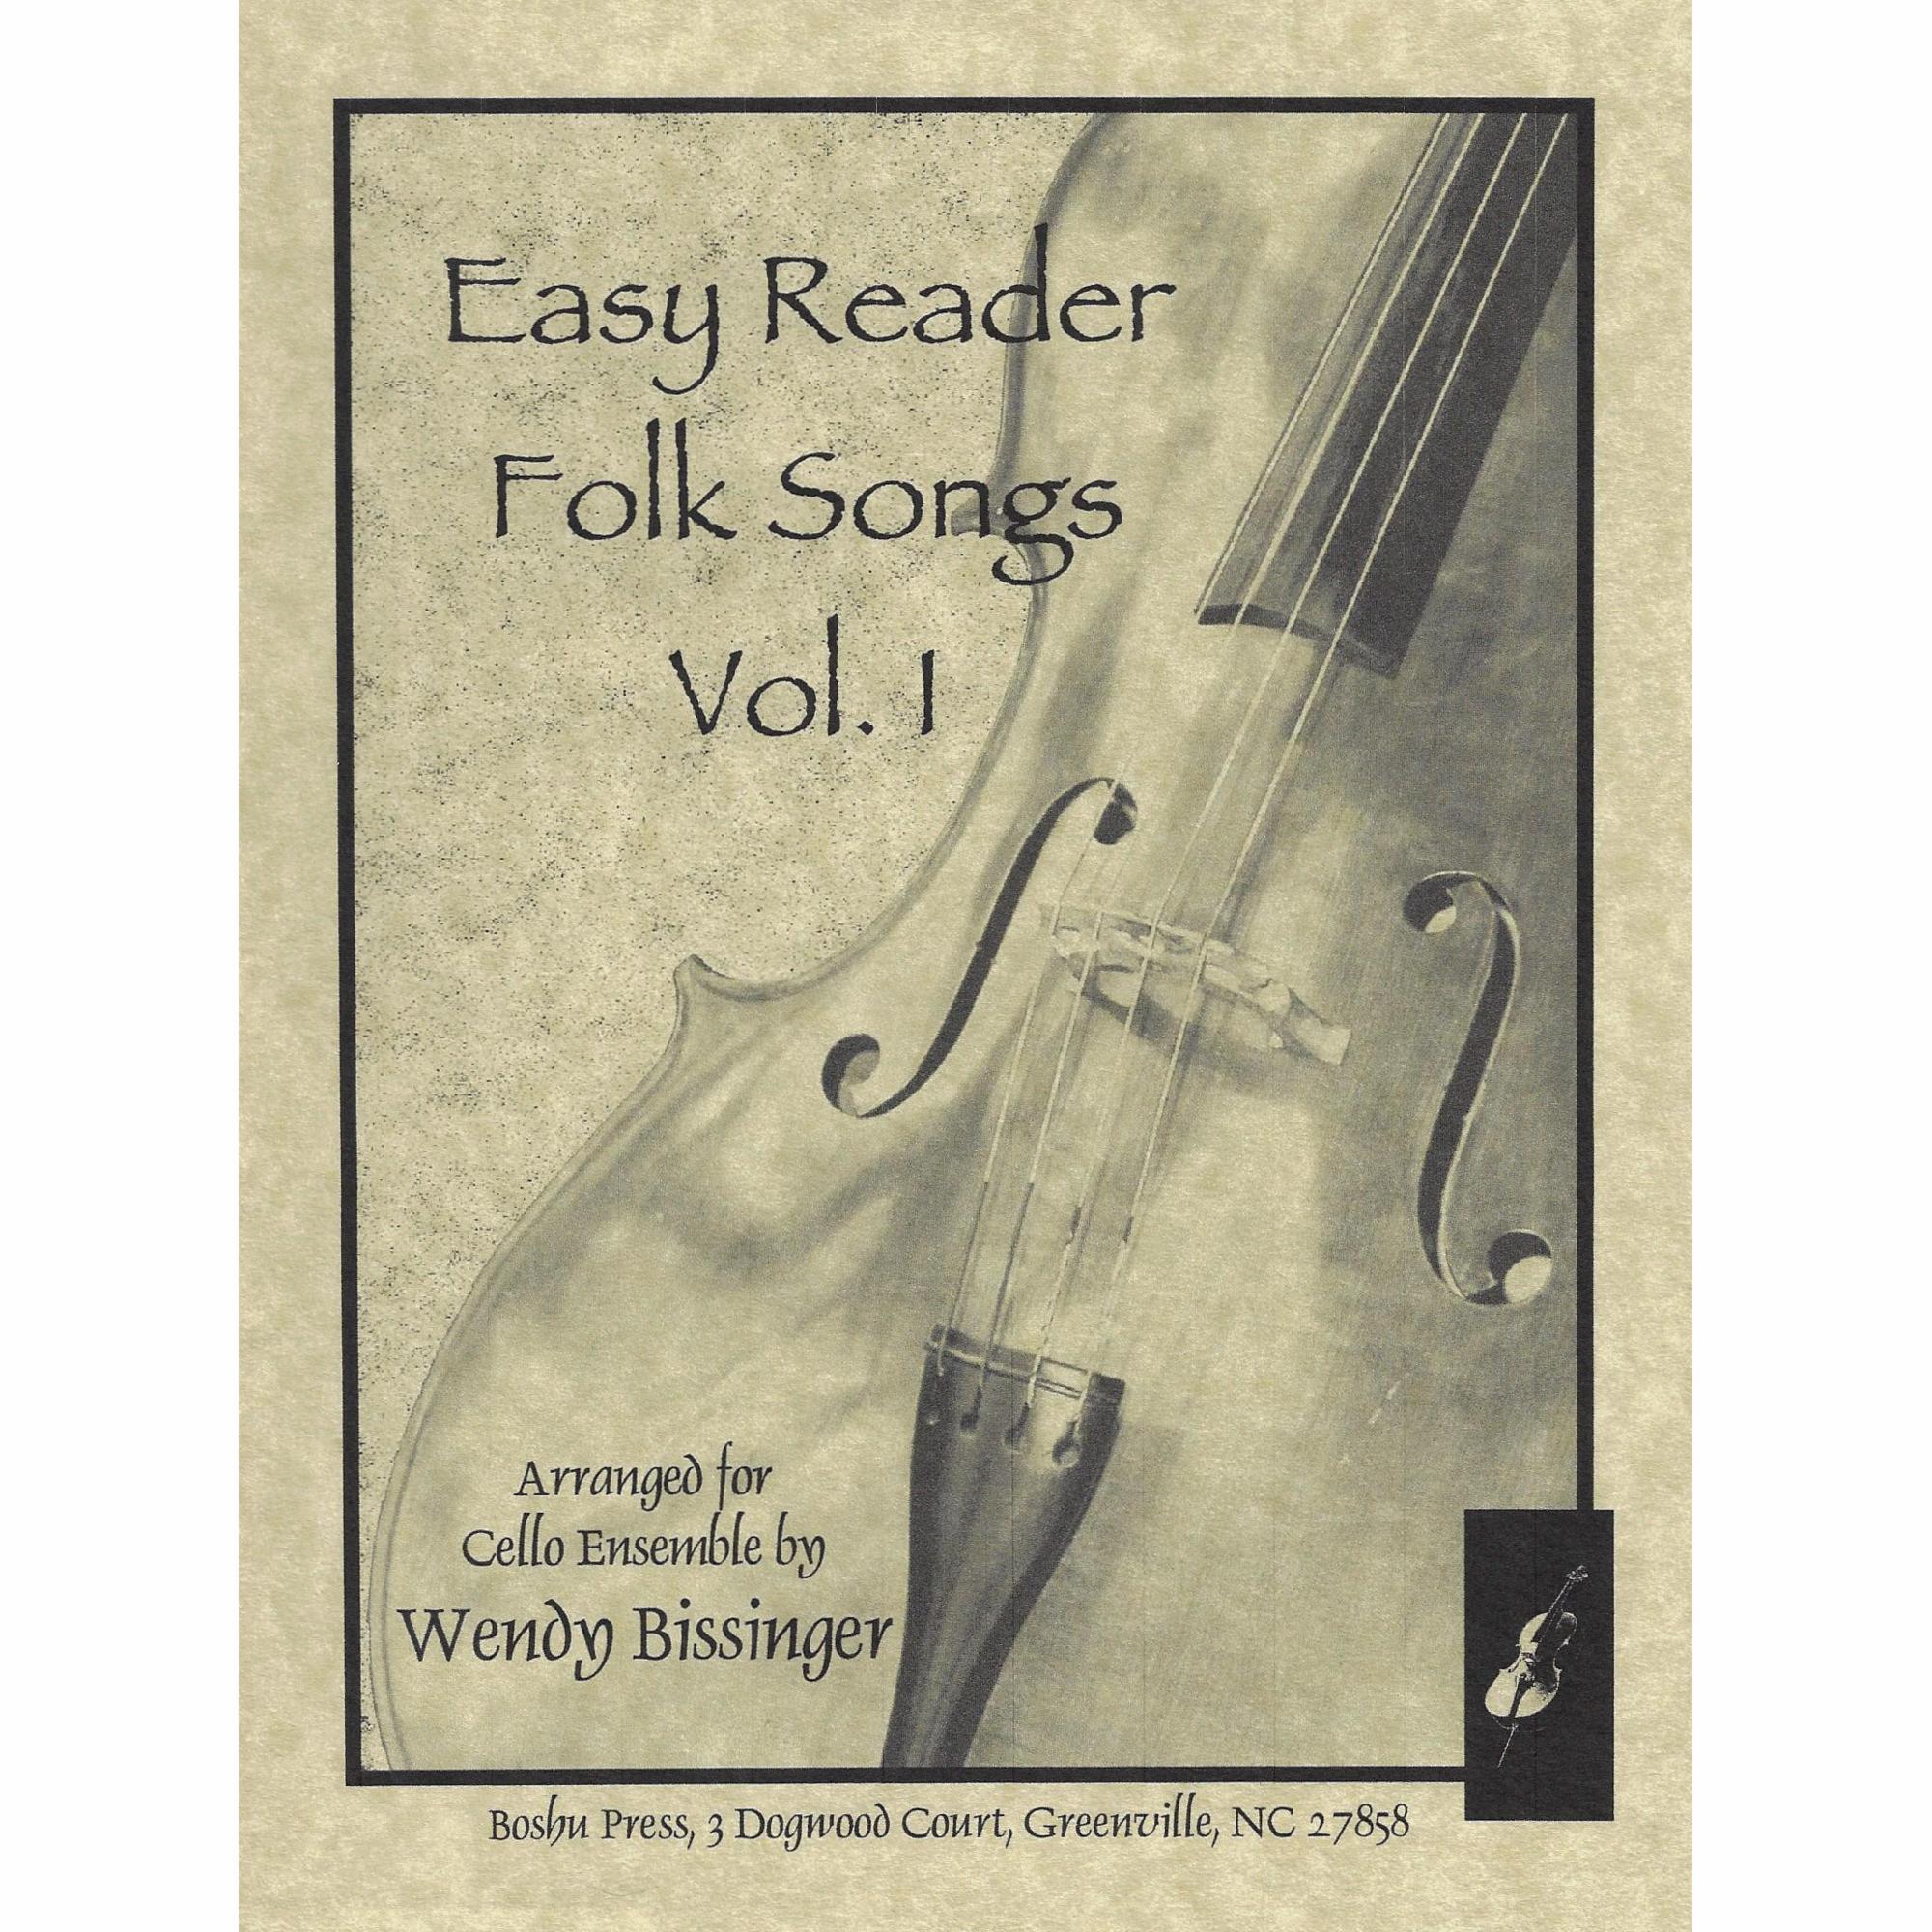 Easy Reader Folk Songs, Vols. I-II for Cello Ensemble